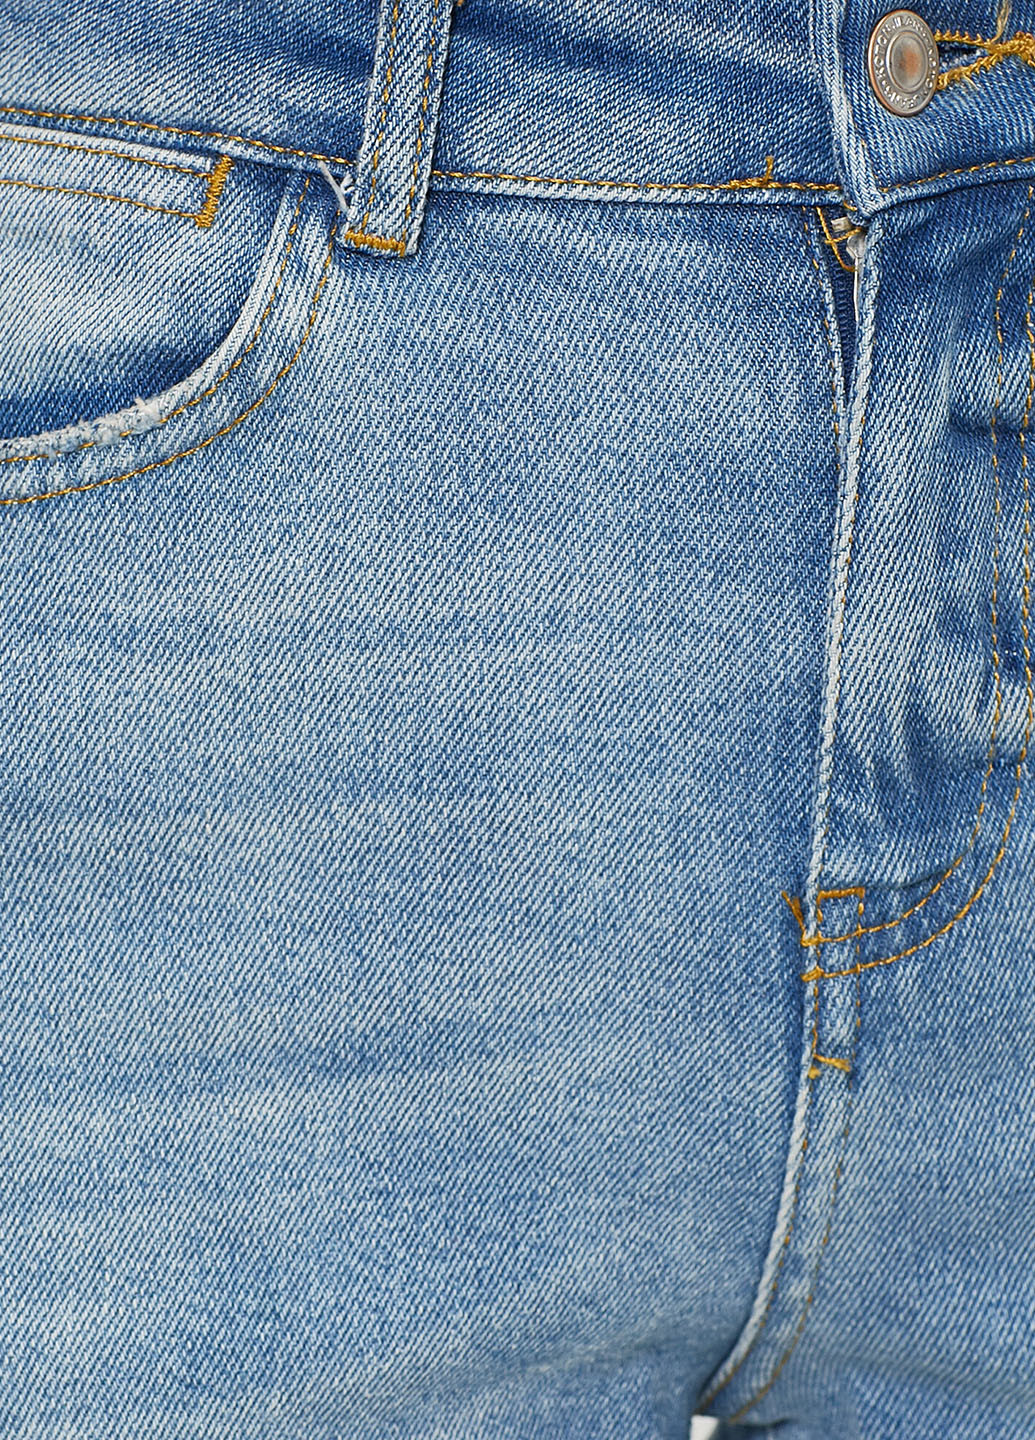 Голубые демисезонные укороченные джинсы KOTON